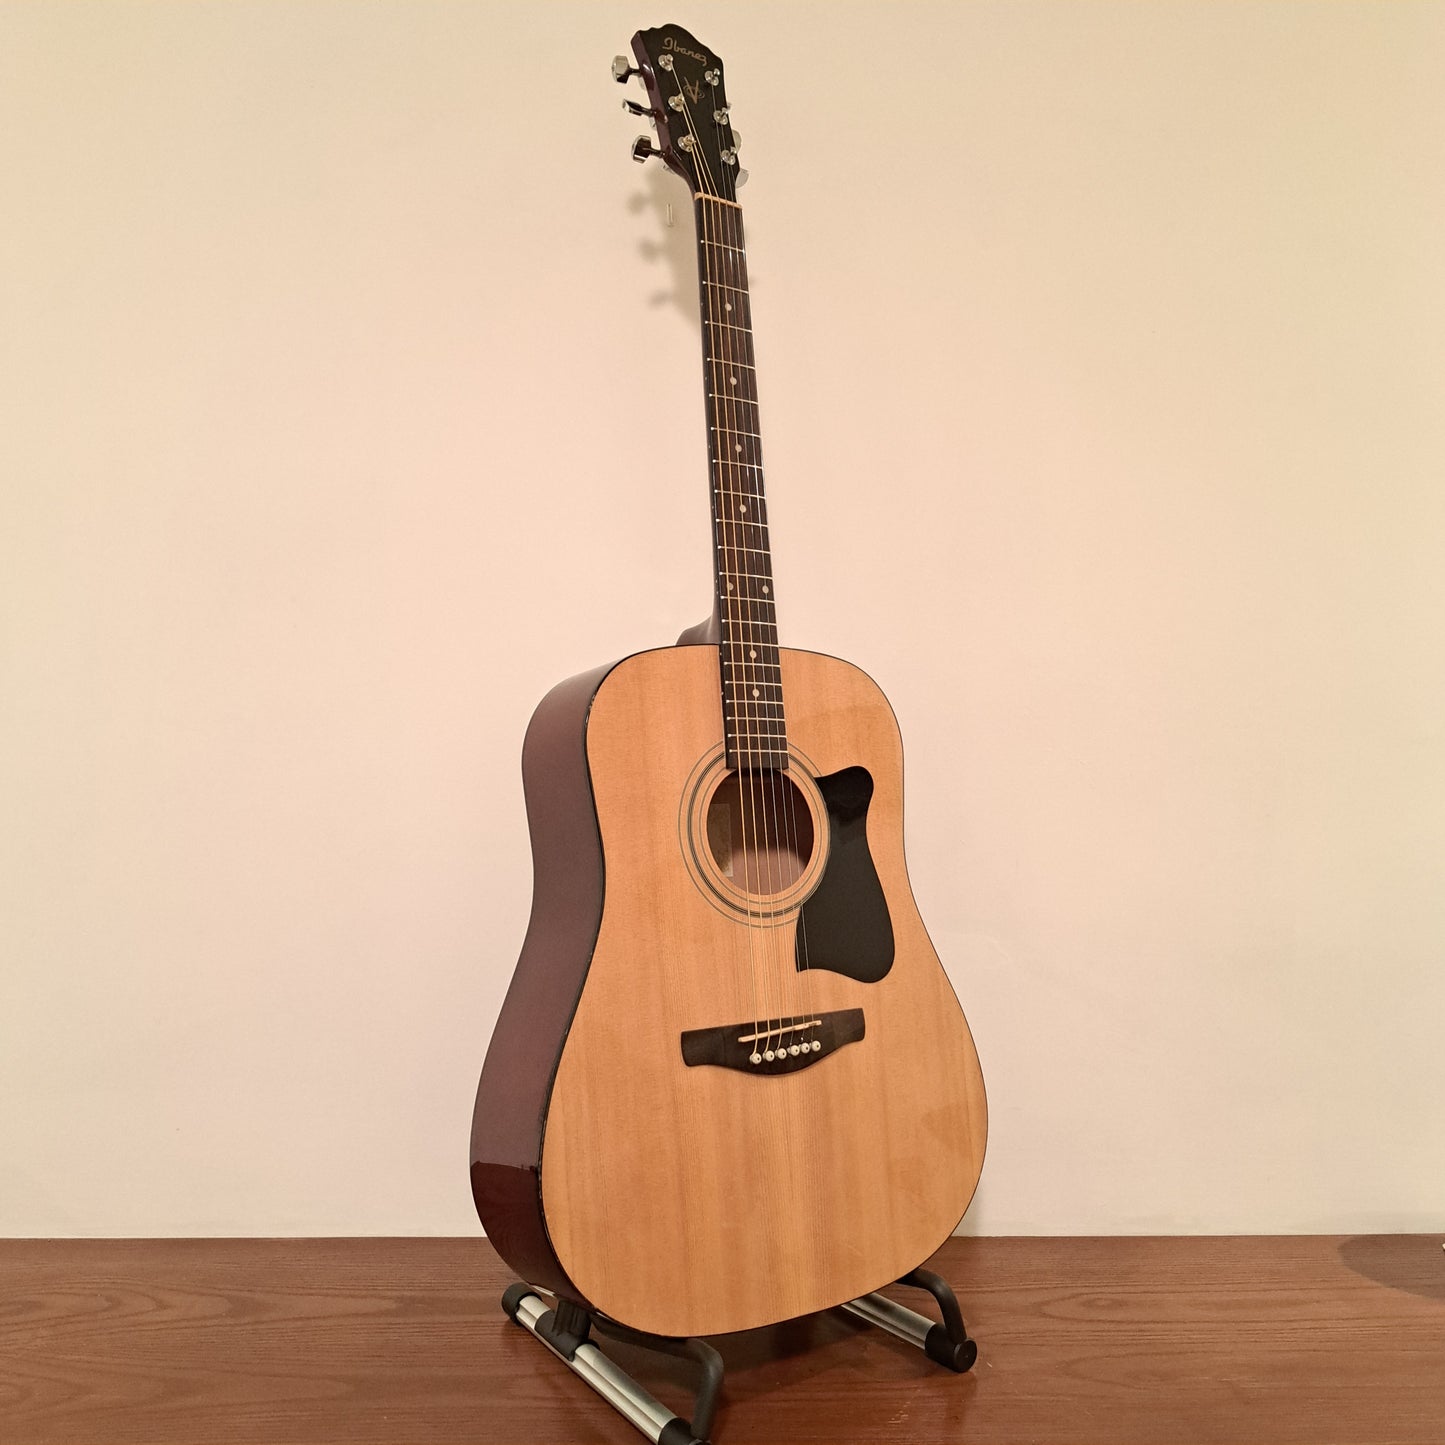 Ibanez V50VJP Acoustic Guitar